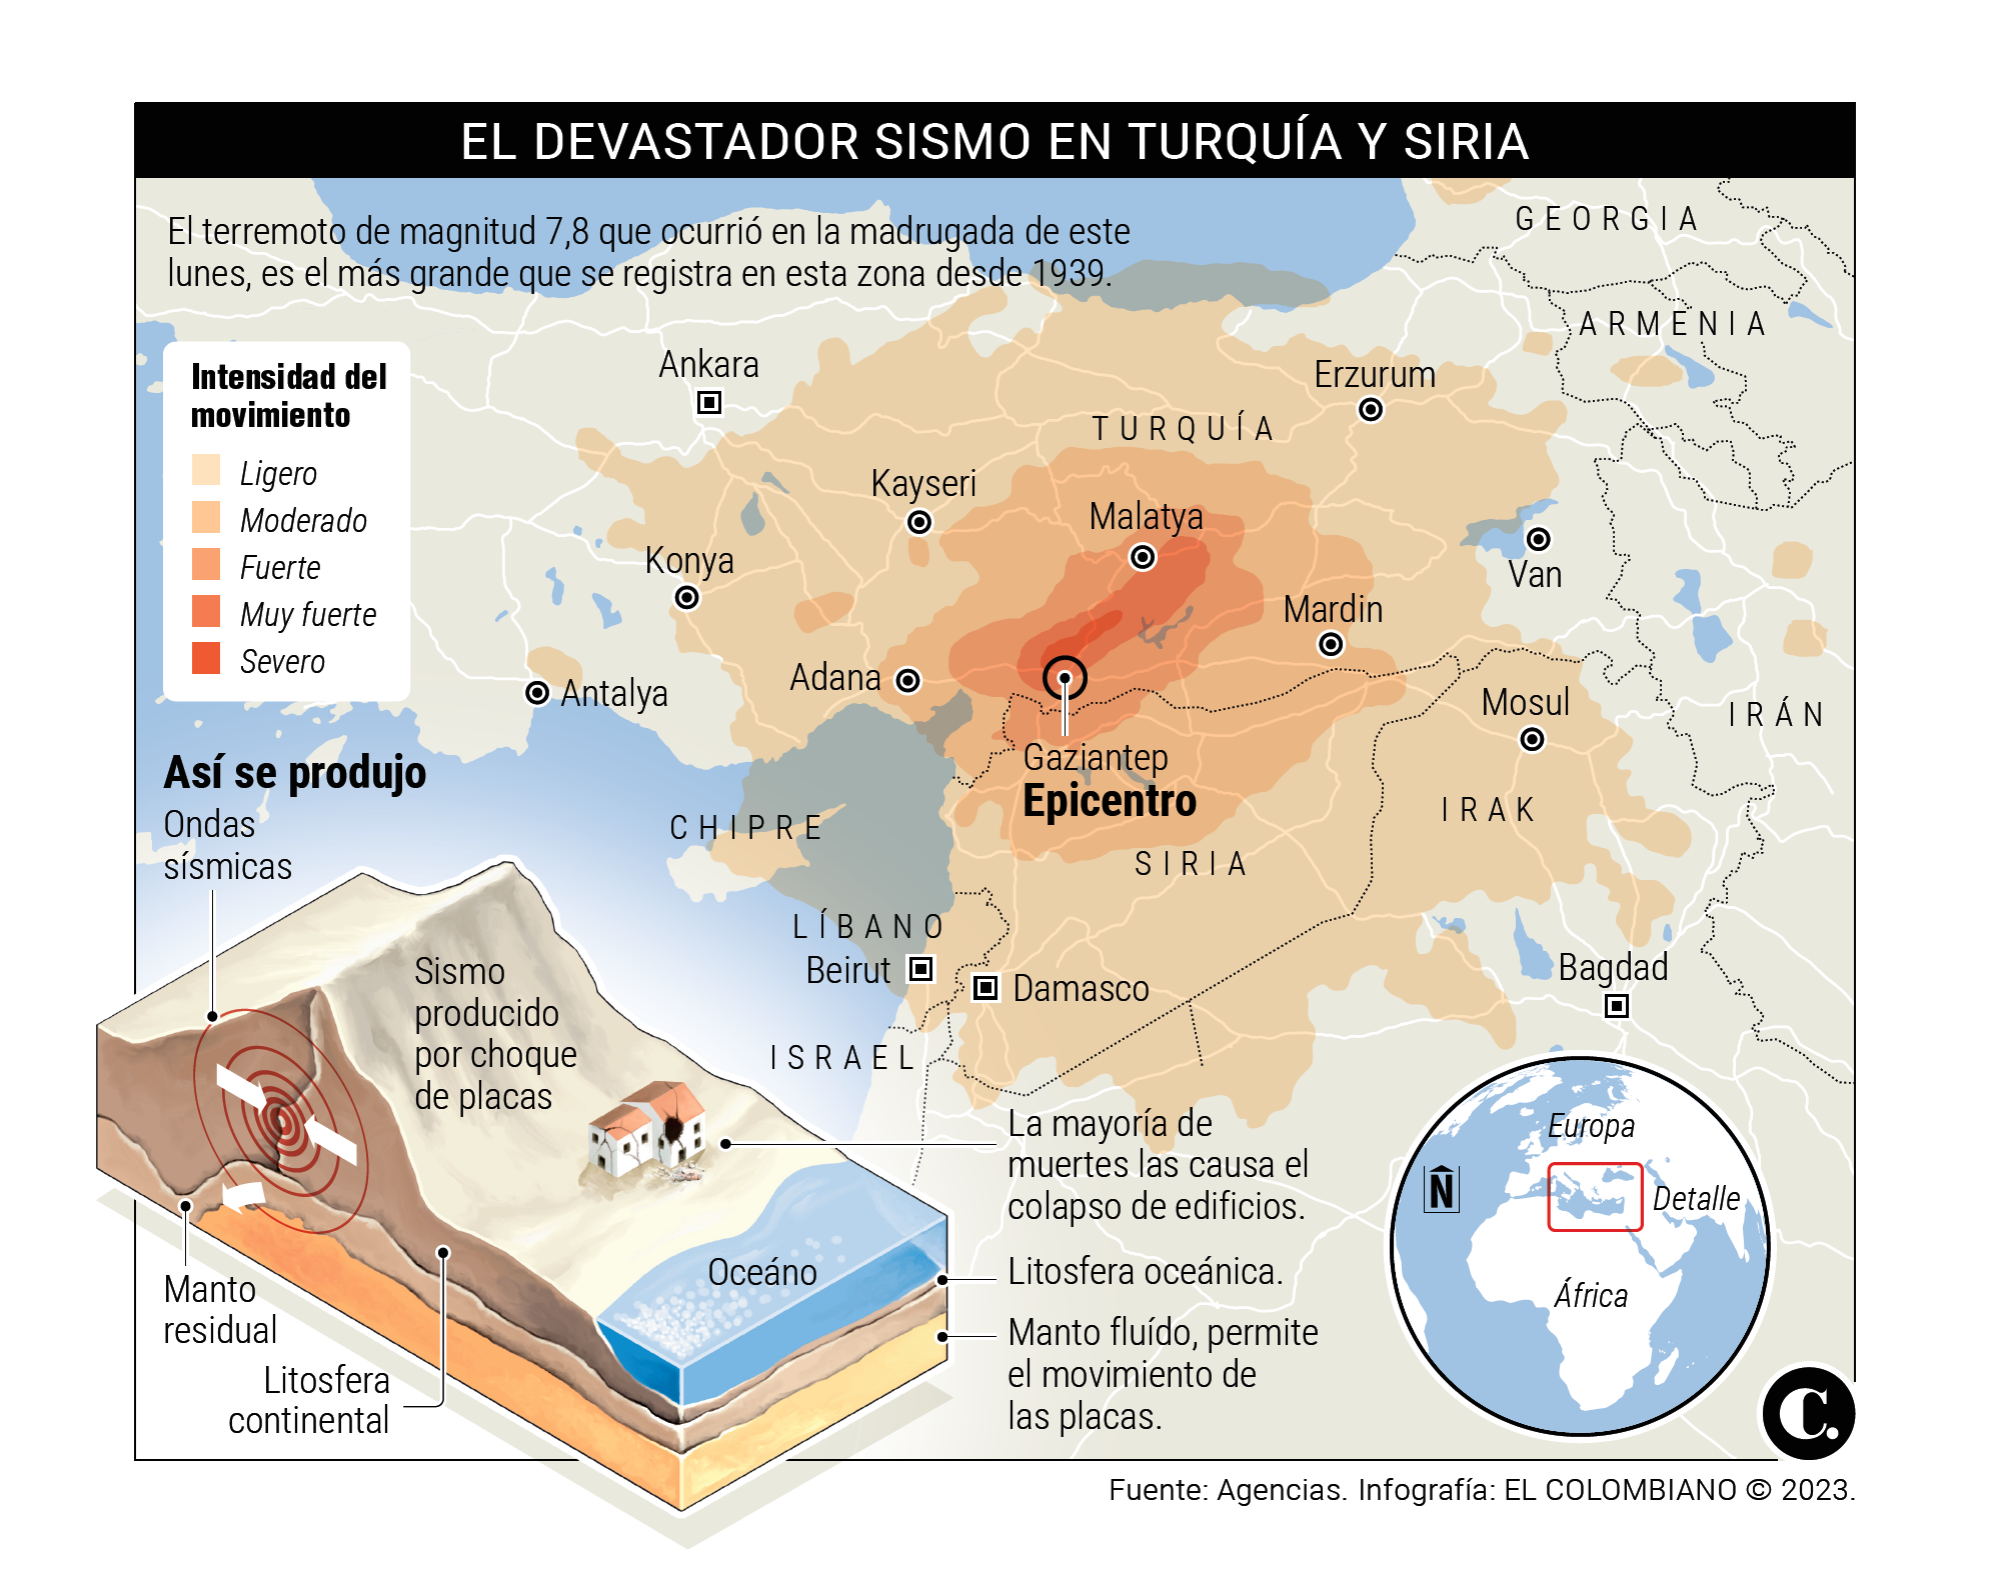 Siria y Turquía destruidas por el peor terremoto en casi un siglo 